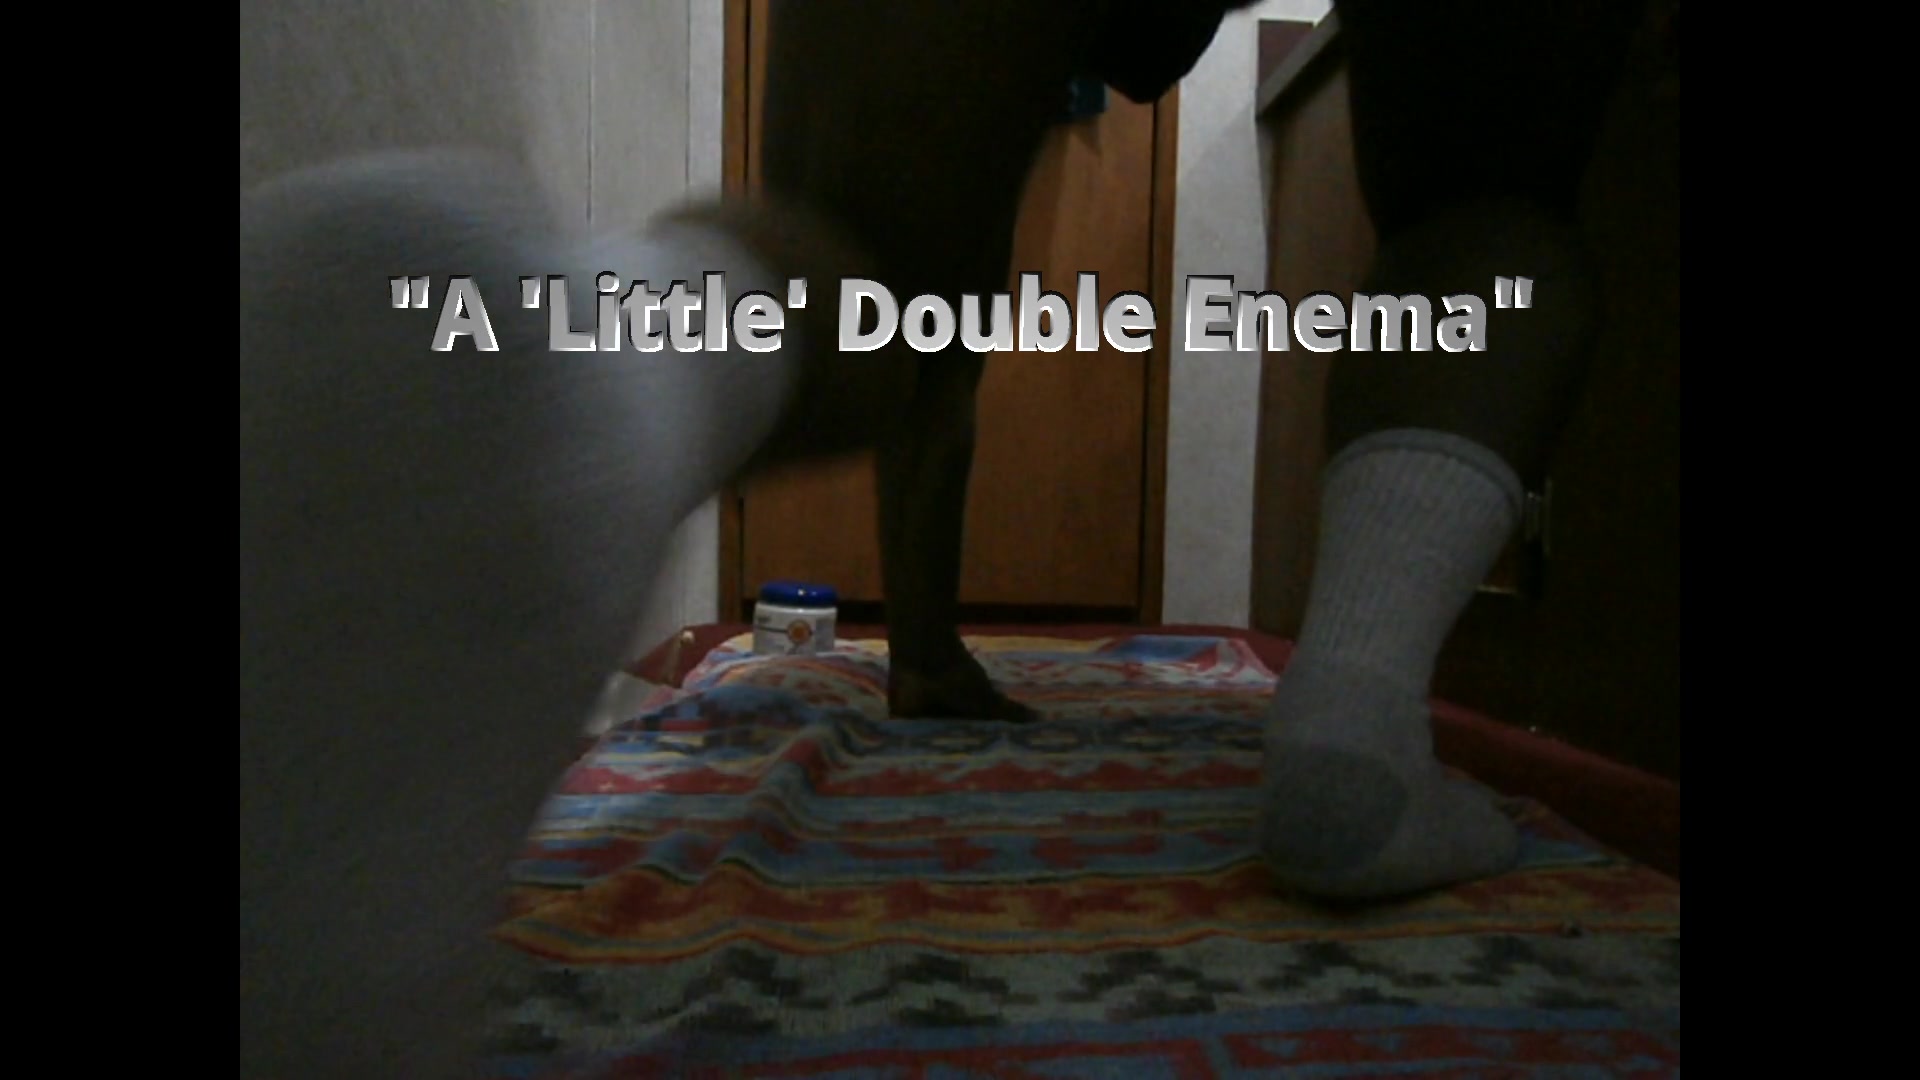 "A 'Little' Double Enema"